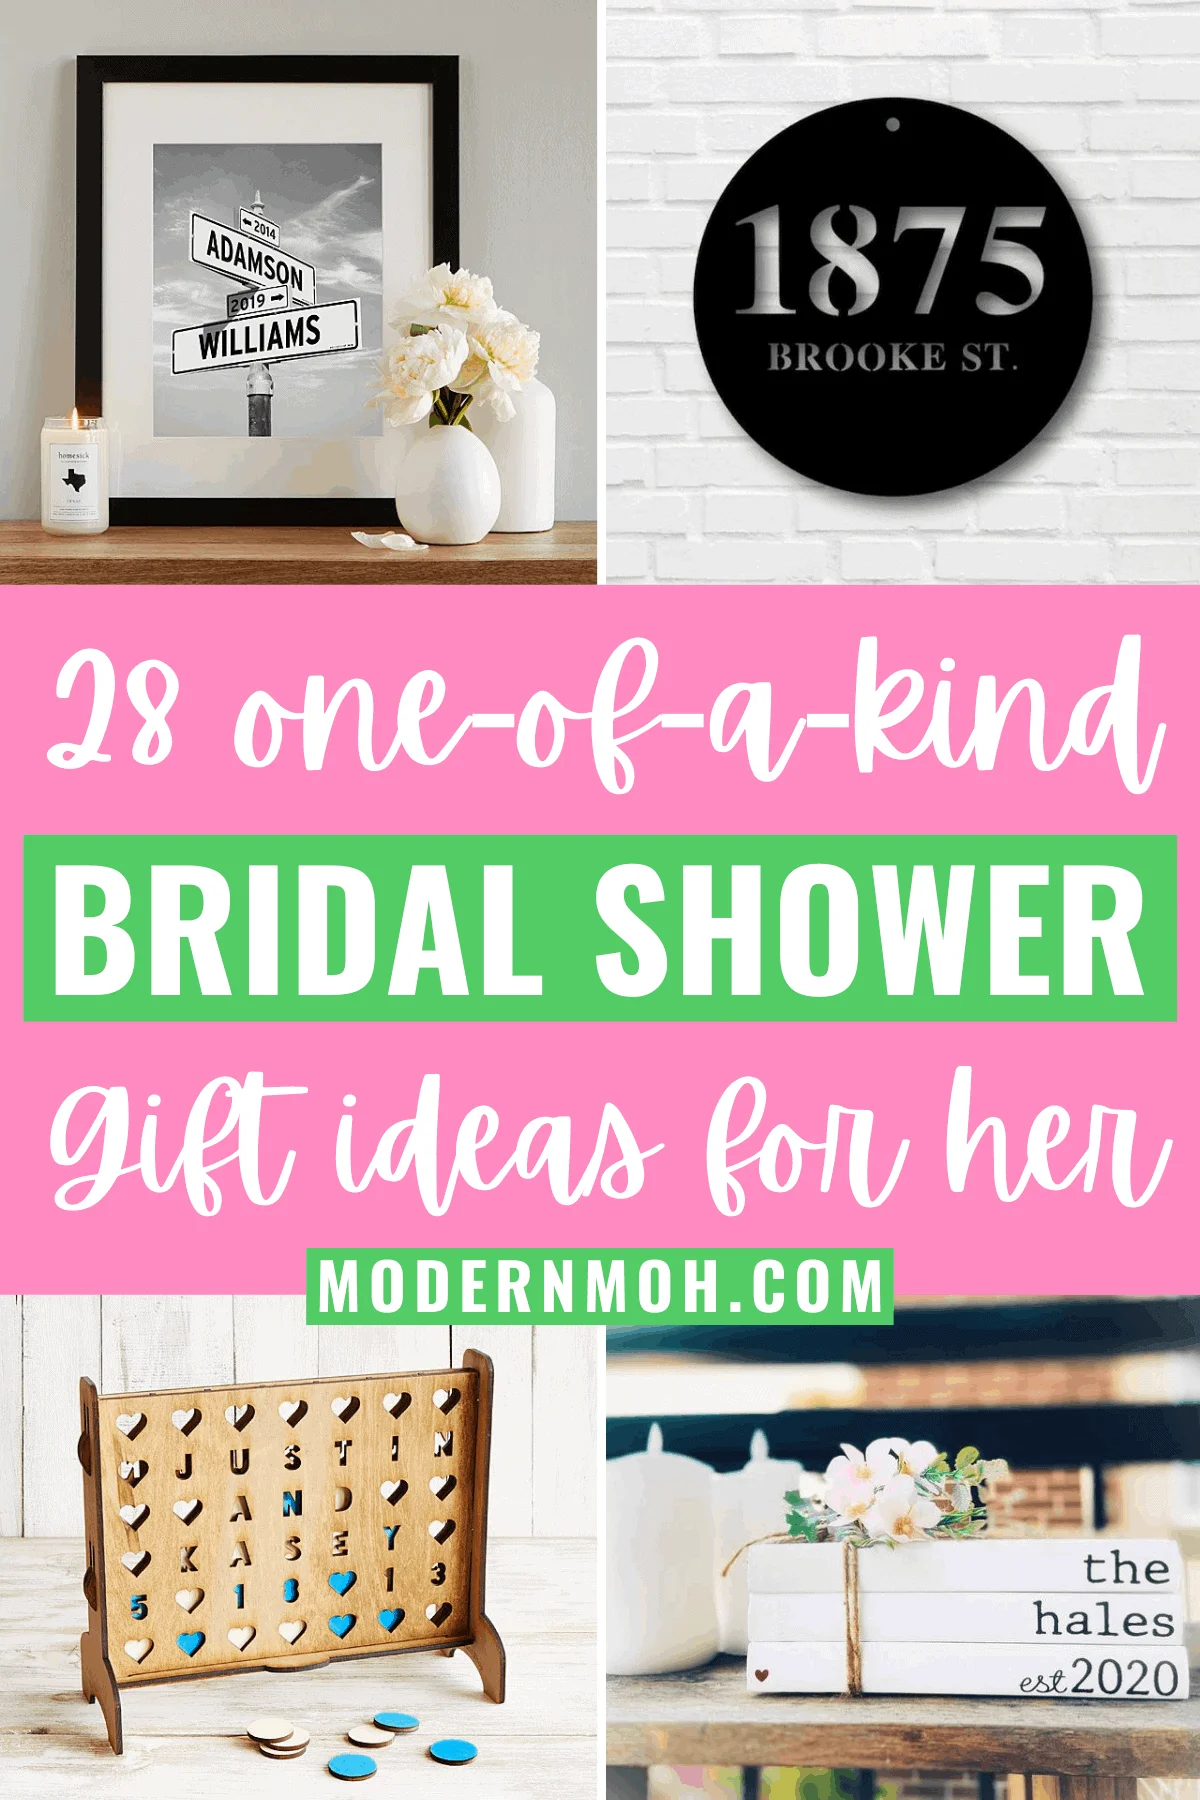 Bridal Shower Gift Ideas for Sister - Lemon8 Search